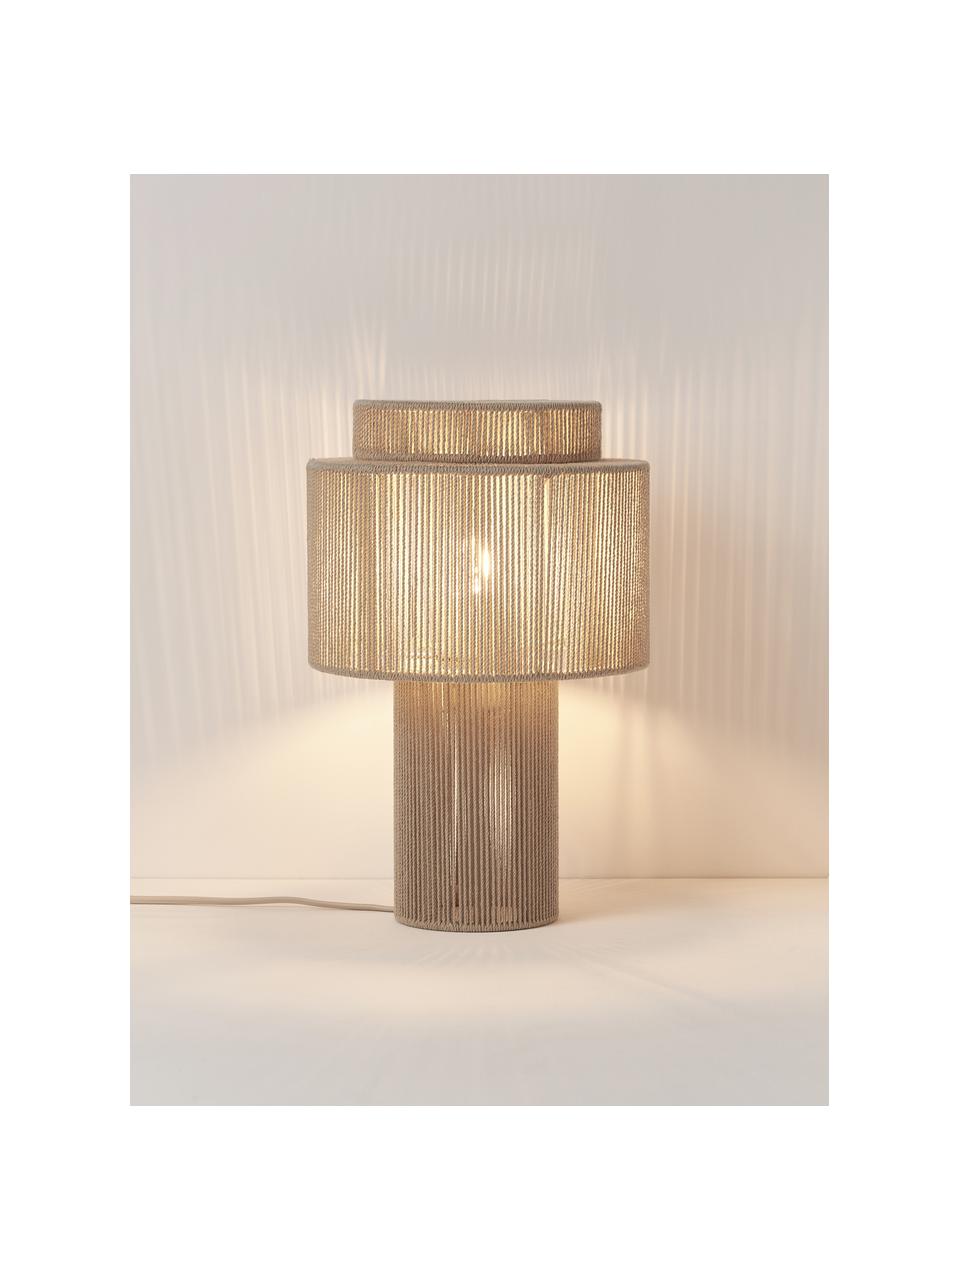 Tafellamp Lace van linnen draden, Natuurlijke vezels, Beige, Ø 25 x H 38 cm